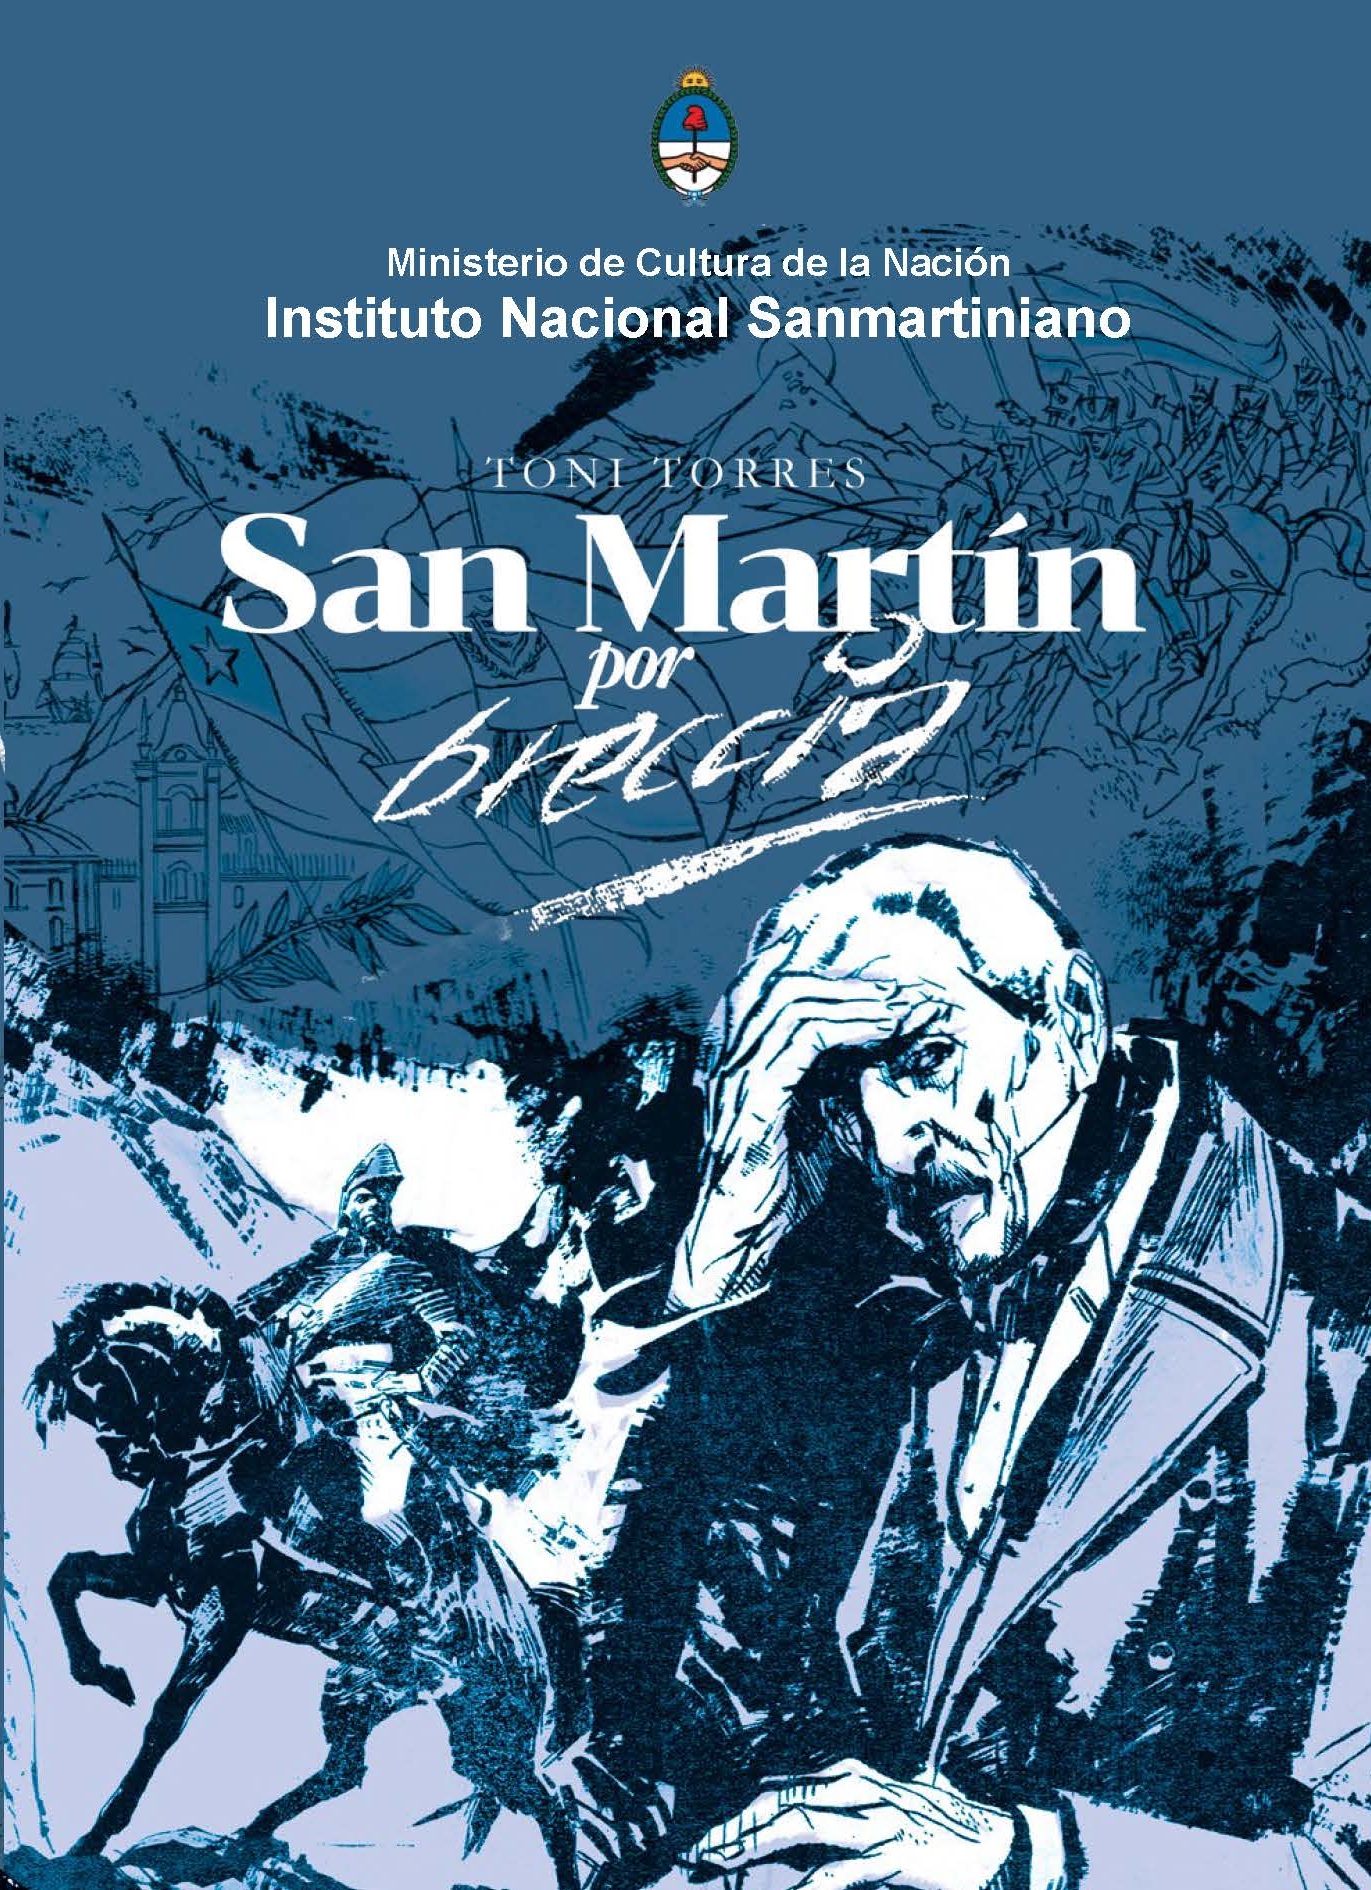 Presentación de "San Martín por Breccia" en la Feria Internacional del Libro